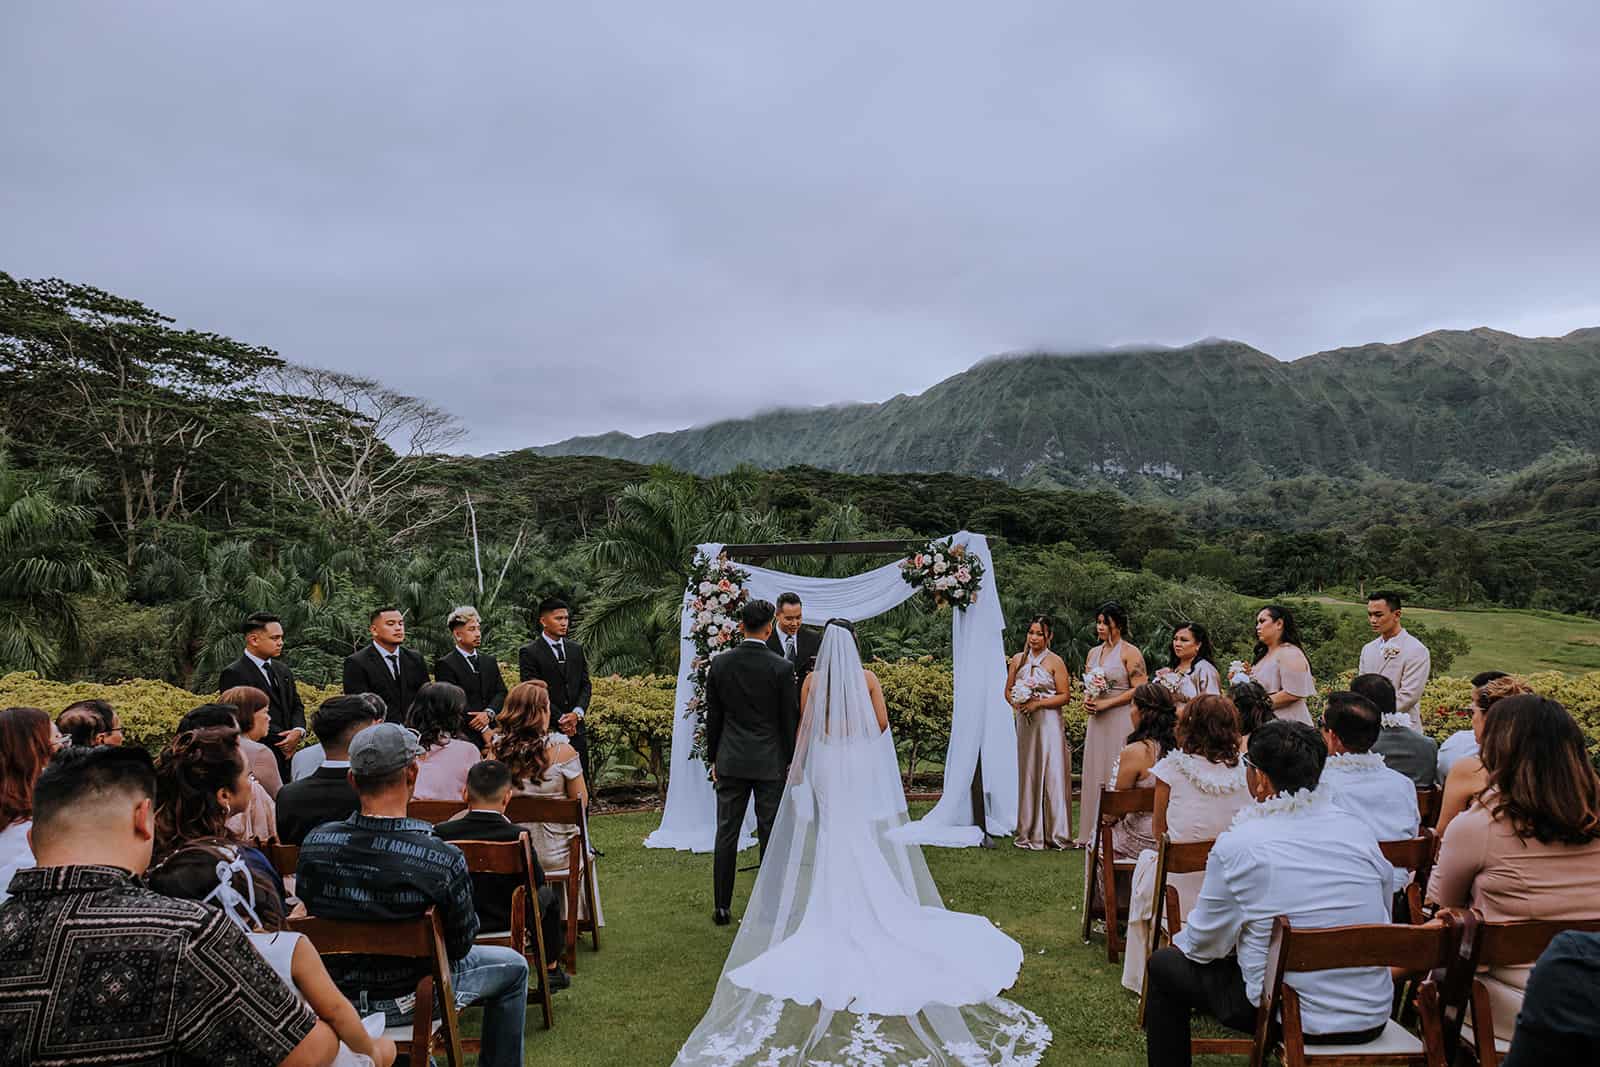 royal hawaiian Oahu hawaii wedding venue